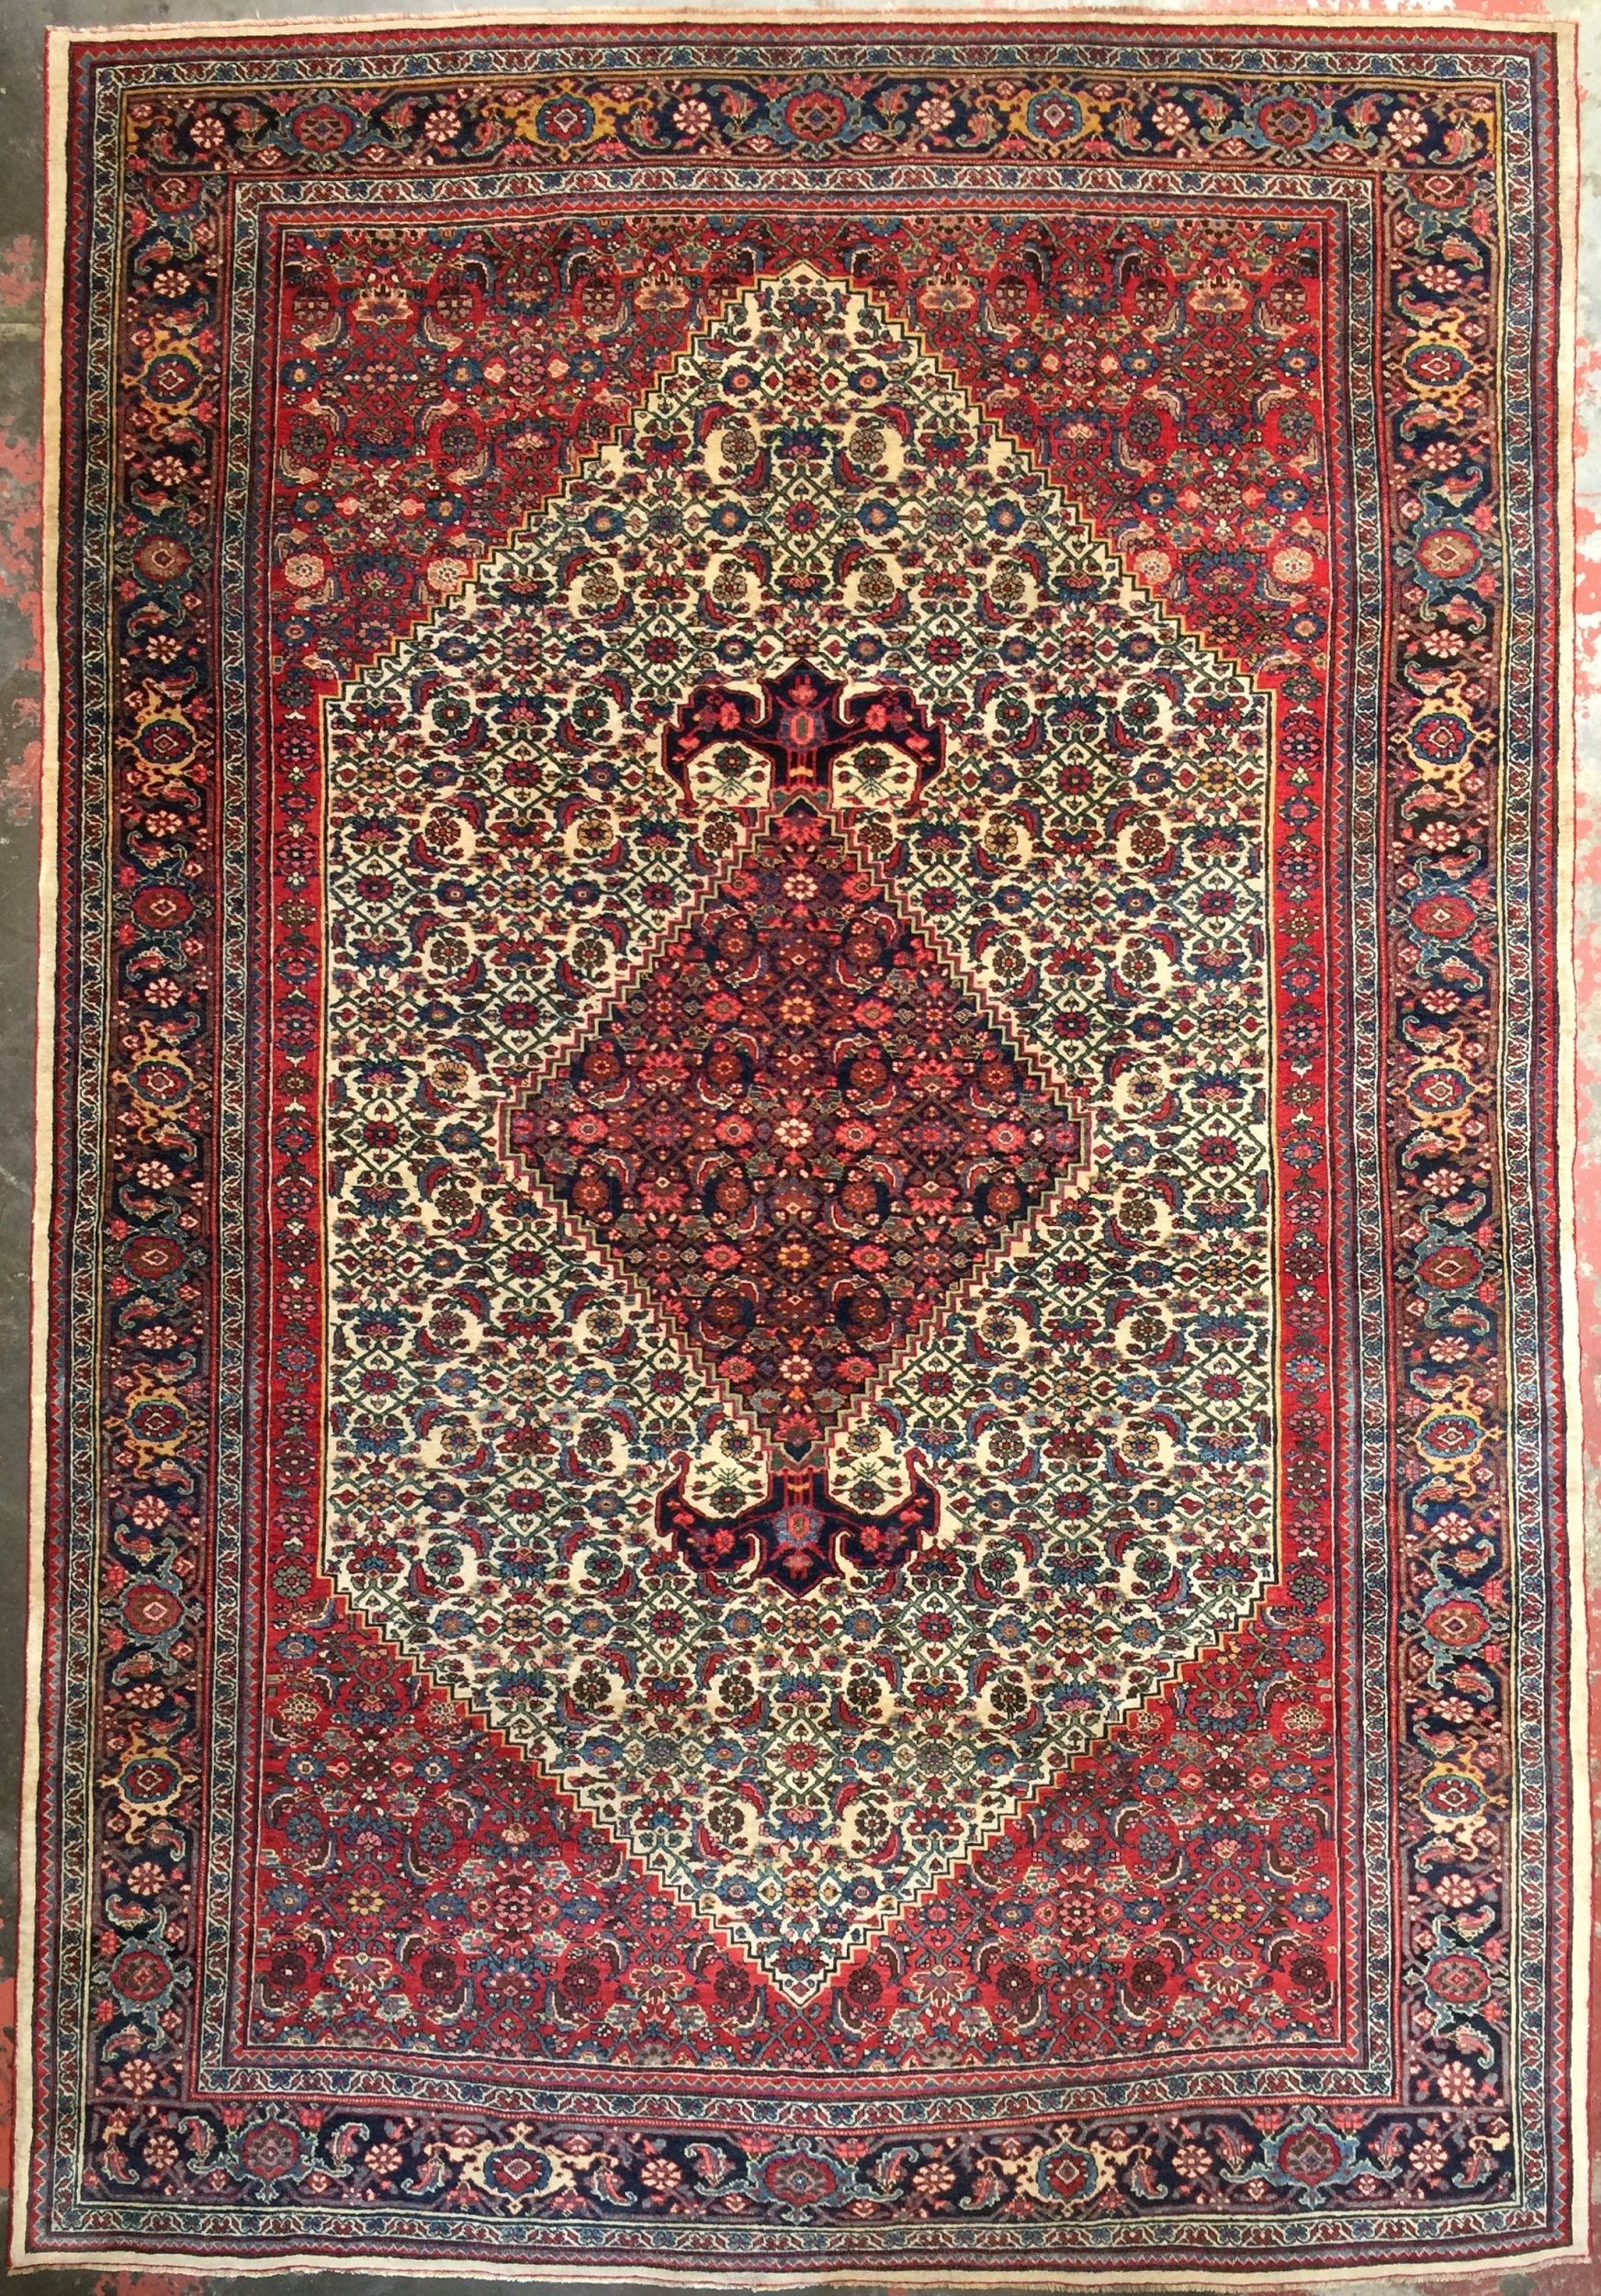 Bijar Persian Rug, 2.4 x 3.6 Ft.